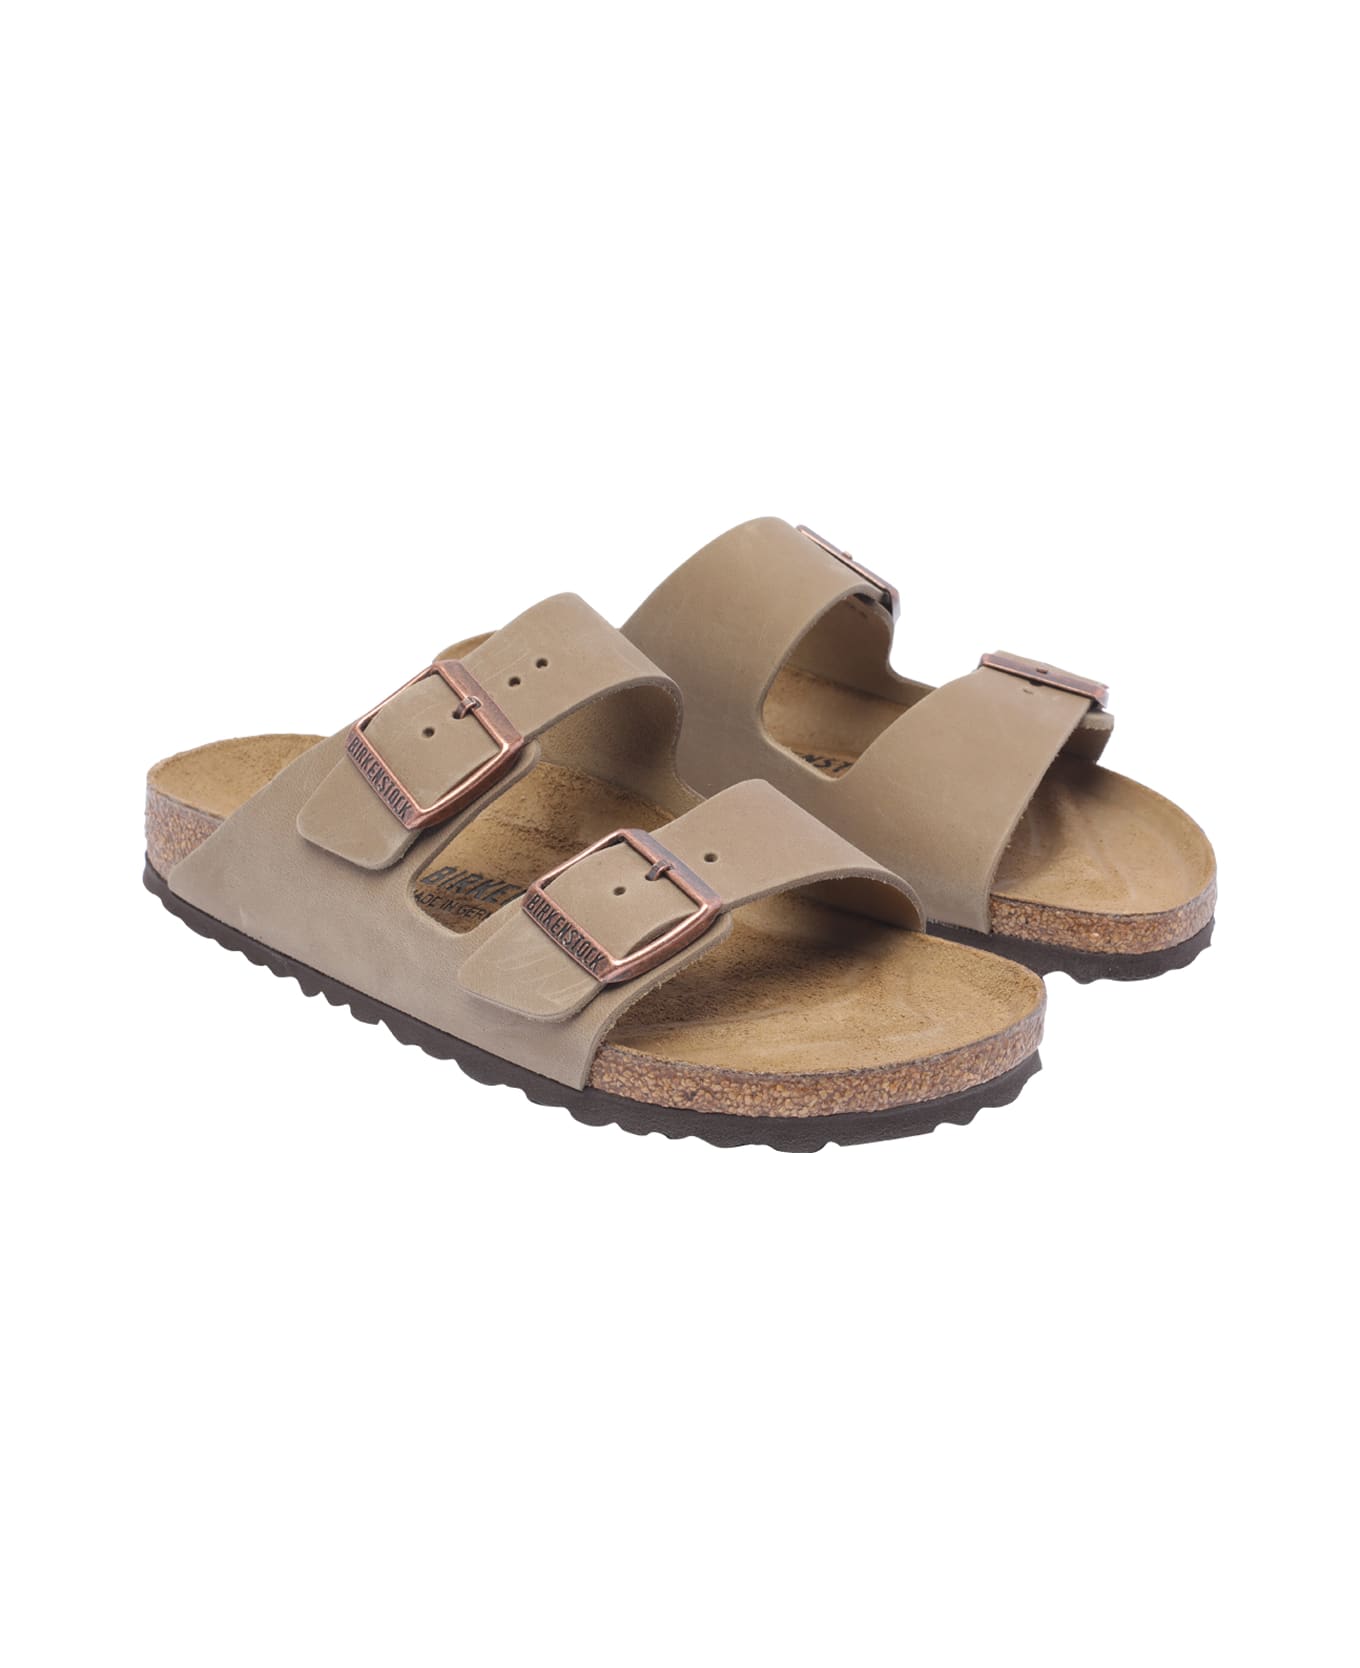 Birkenstock Arizona Sandals - Beige